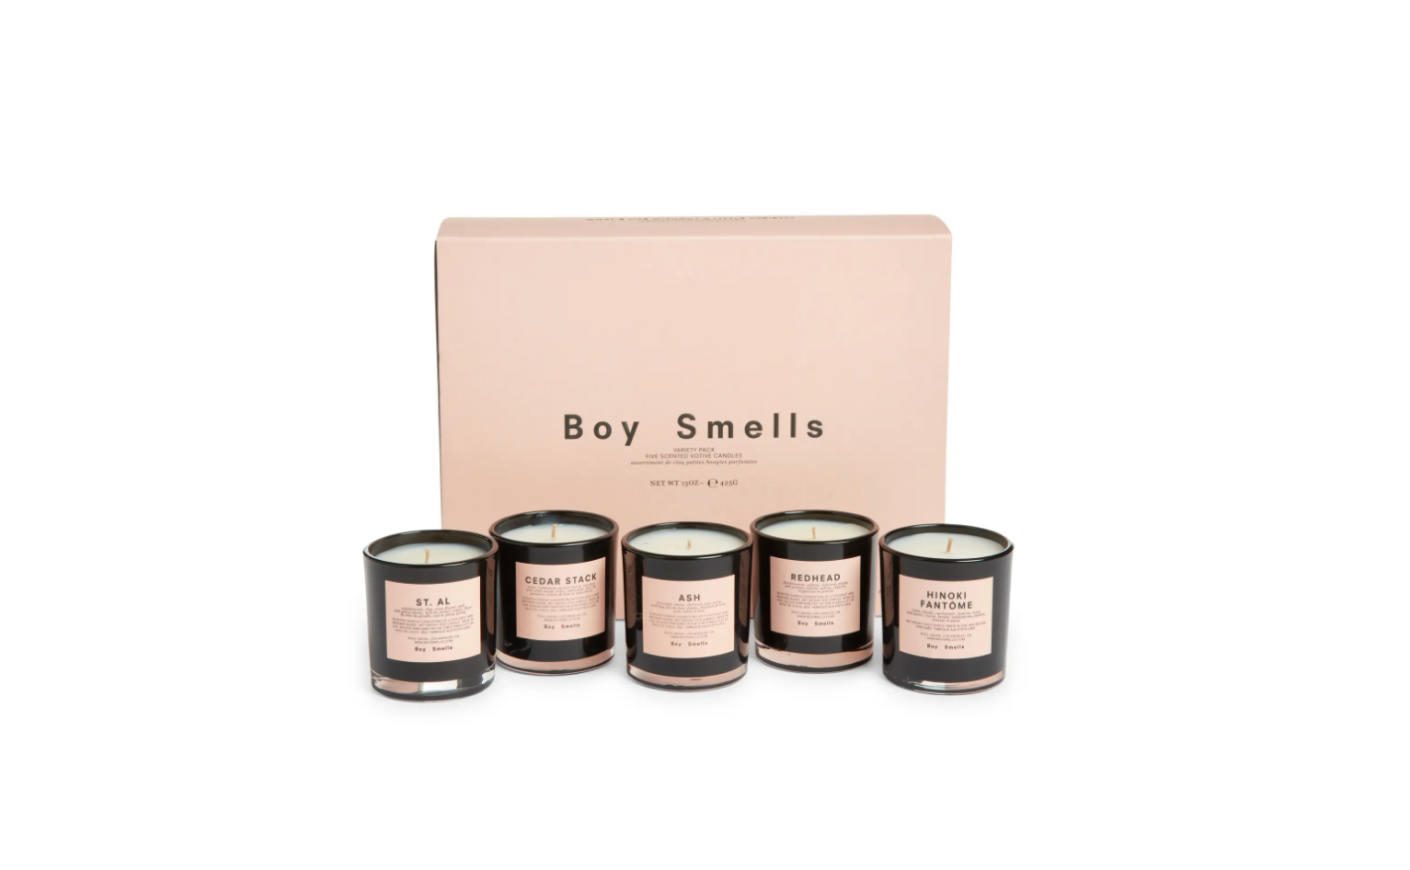 Boy Smells candle set